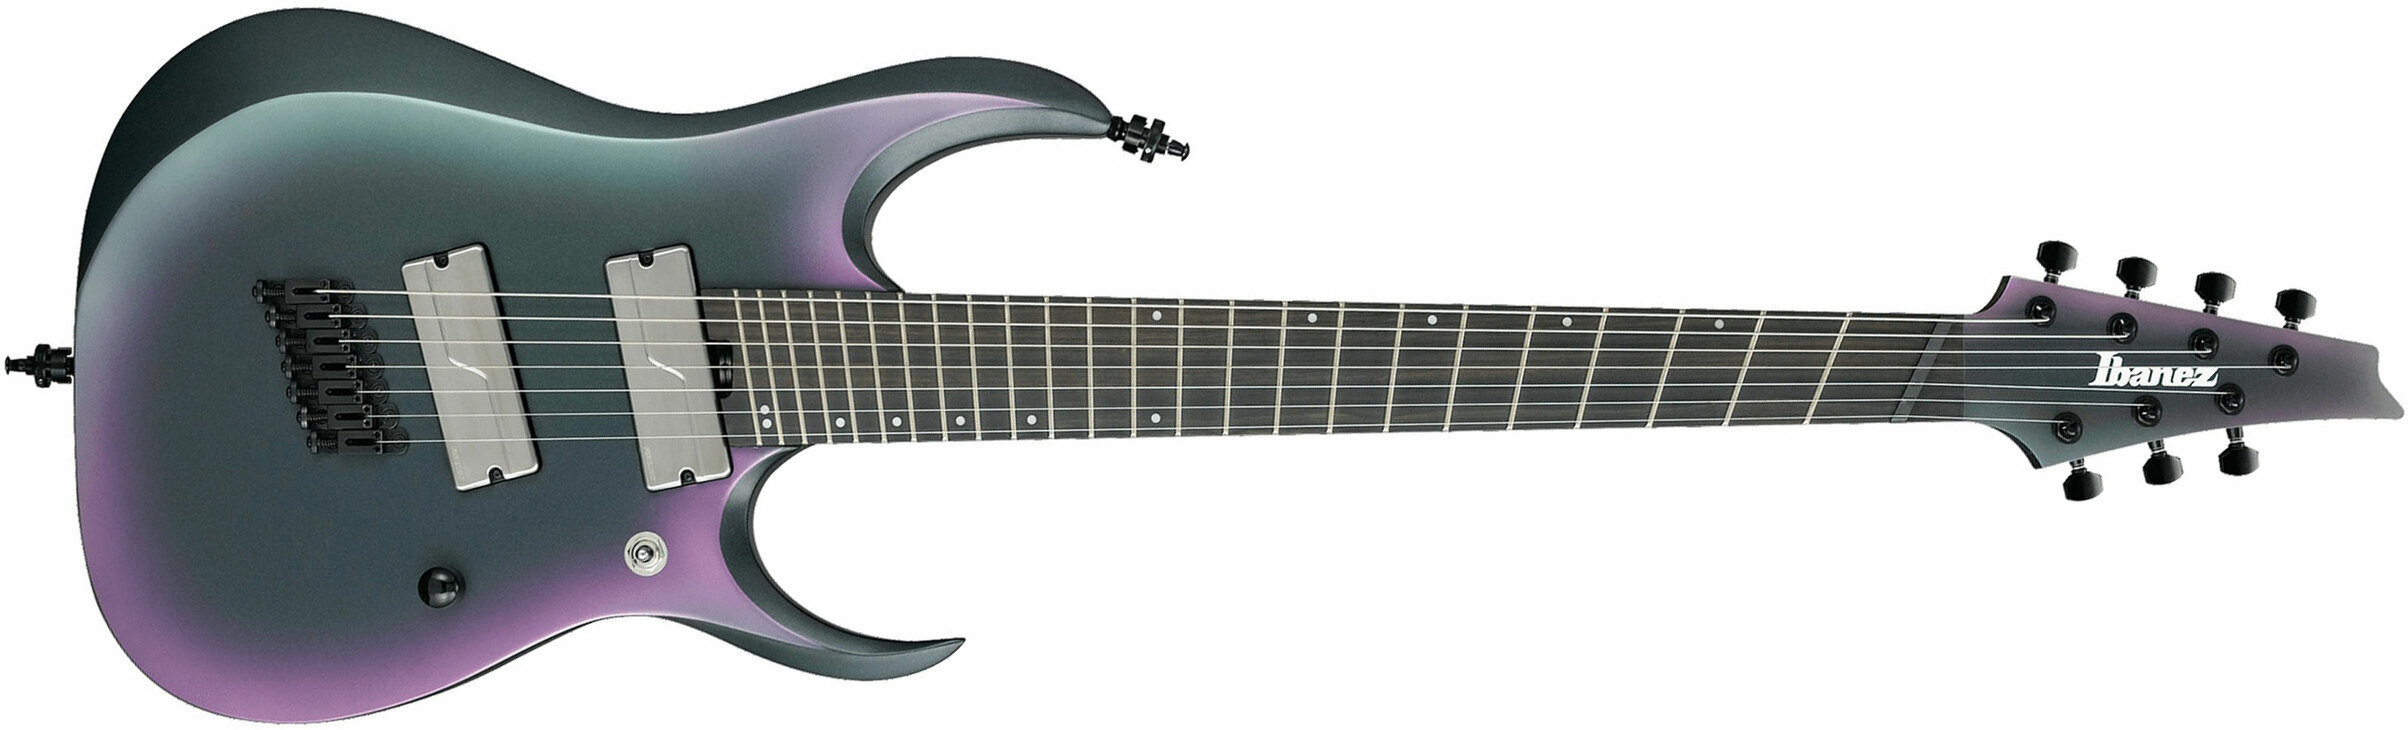 Ibanez Rgd71alms Bam Axion Label Hh Fishman Ht Eb - Black Aurora Burst Matte - Guitare Électrique Multi-scale - Main picture